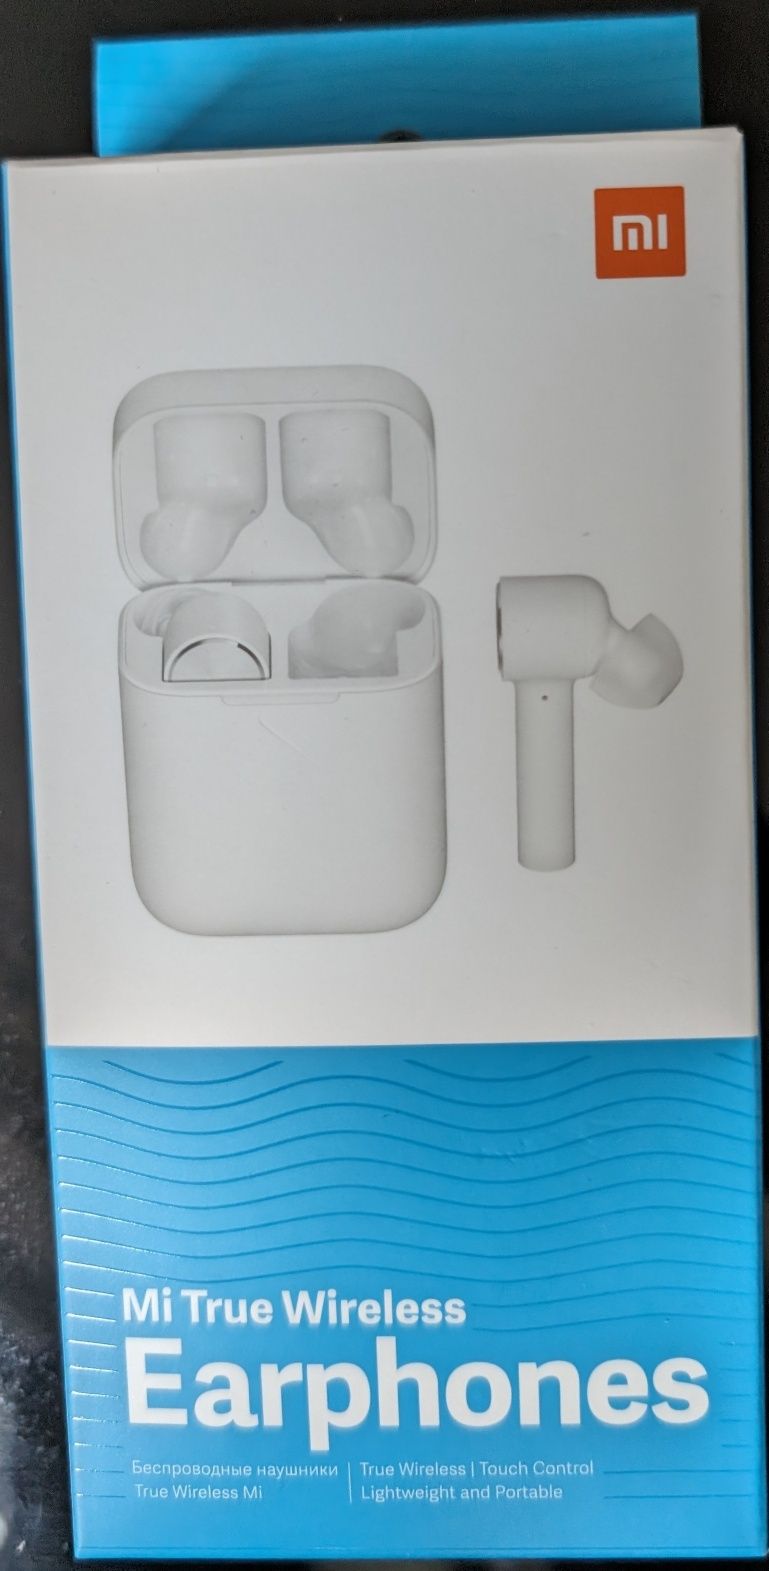 Pudełko a w nim słuchawki Bluetooth Mi True Wireless Earphones